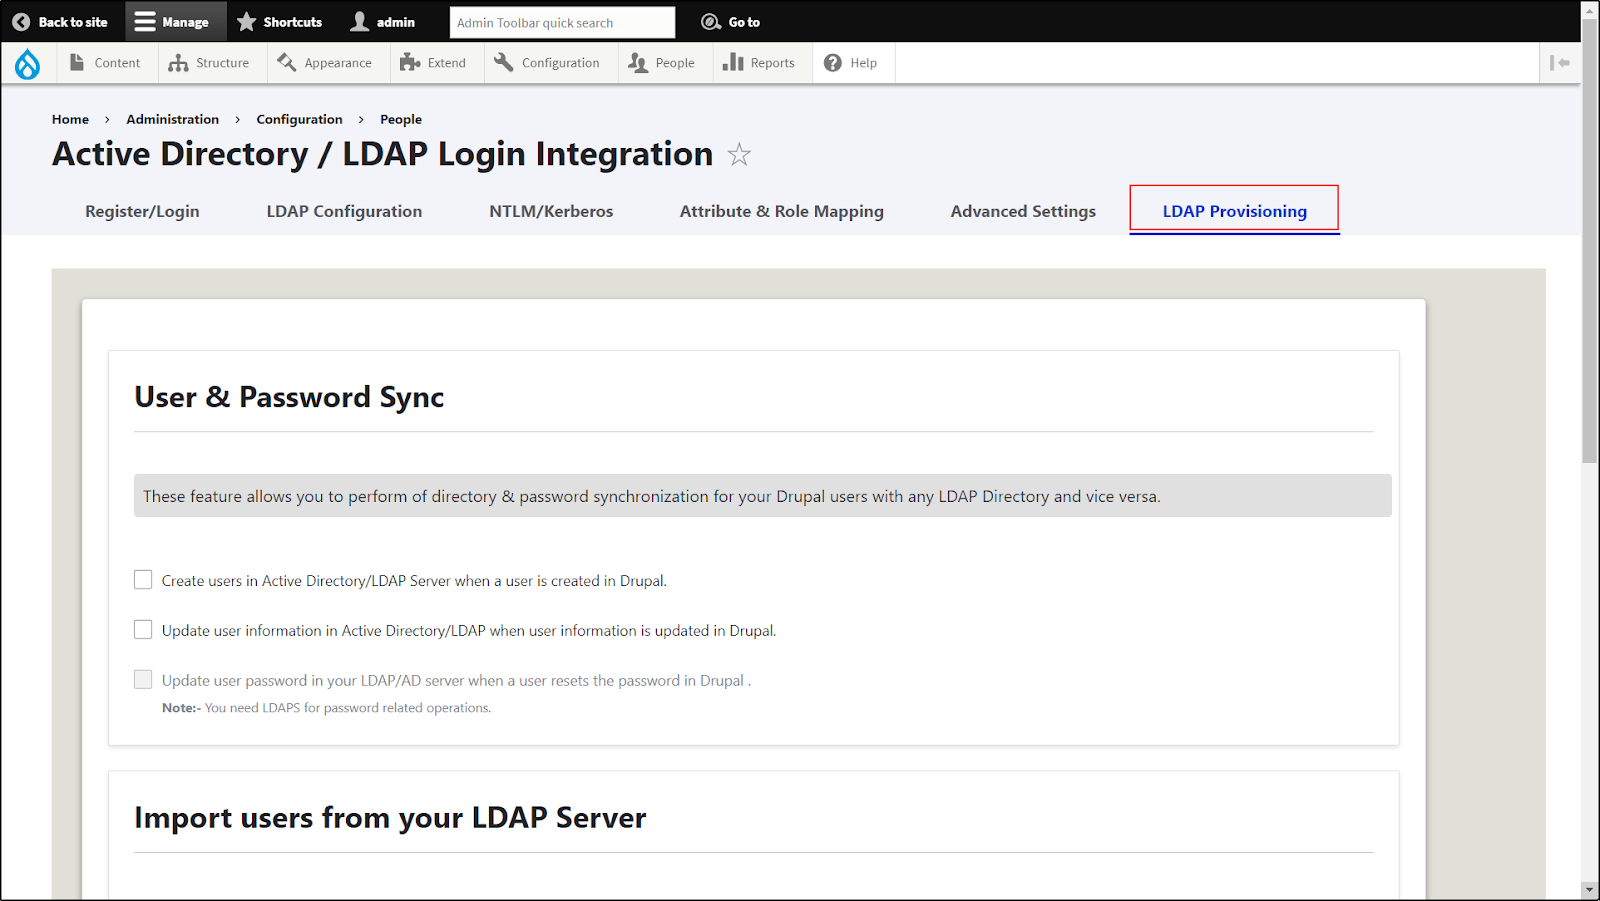 Drupal LDAP/Active Directory Integration - Navigate to LDAP Provisioning tab